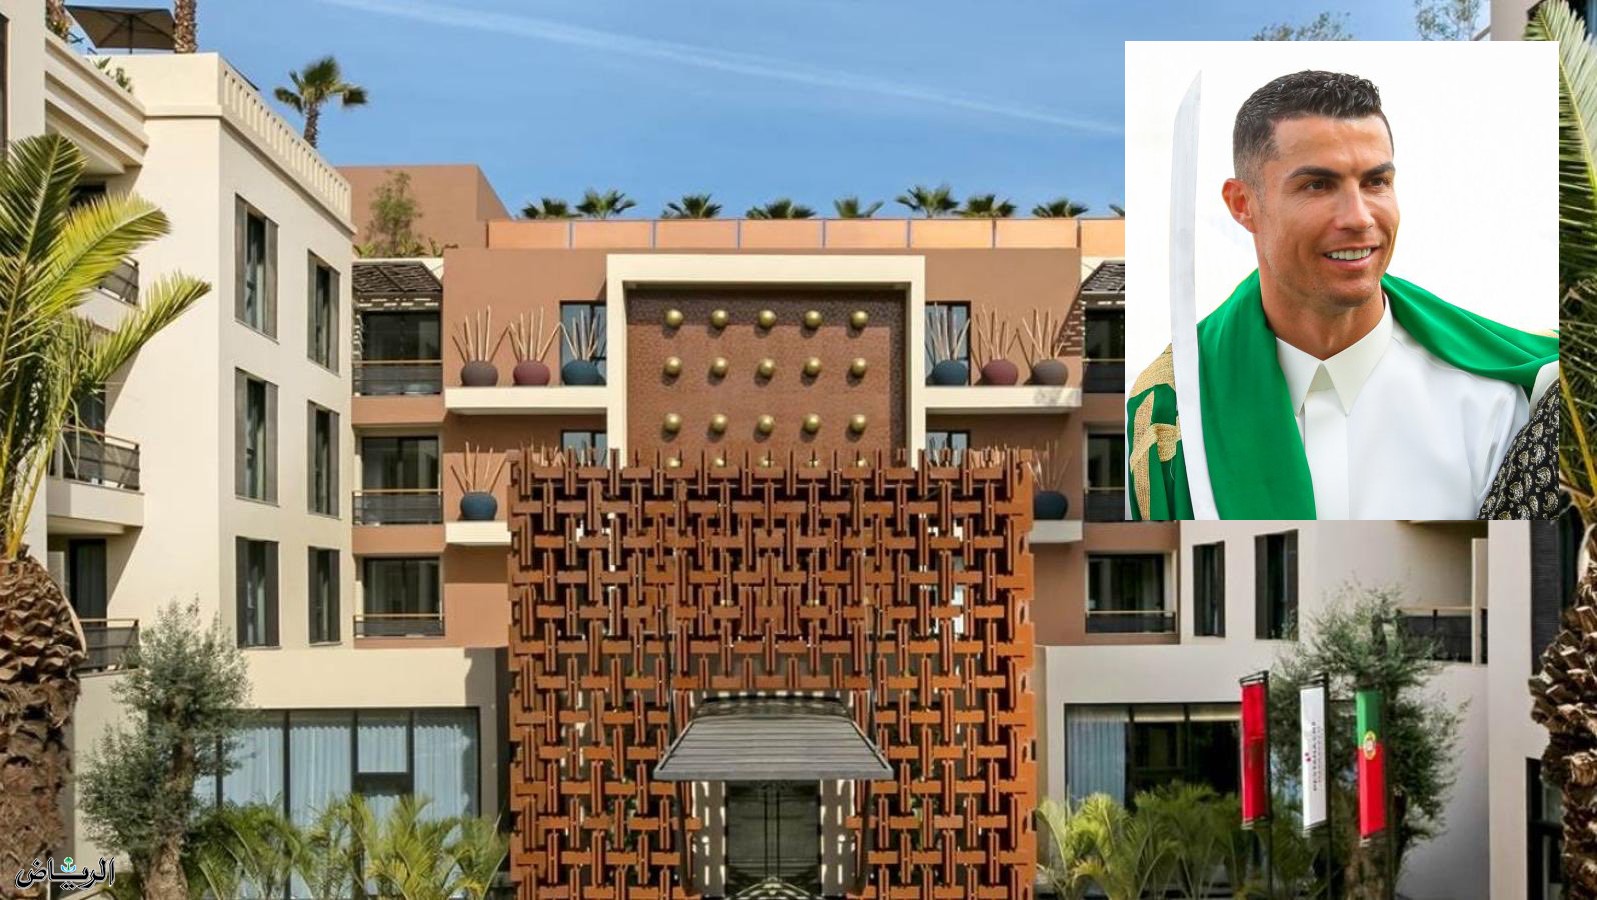 كريستيانو يفتح فندقه في المغرب لاستقبال ضحايا الزلزال